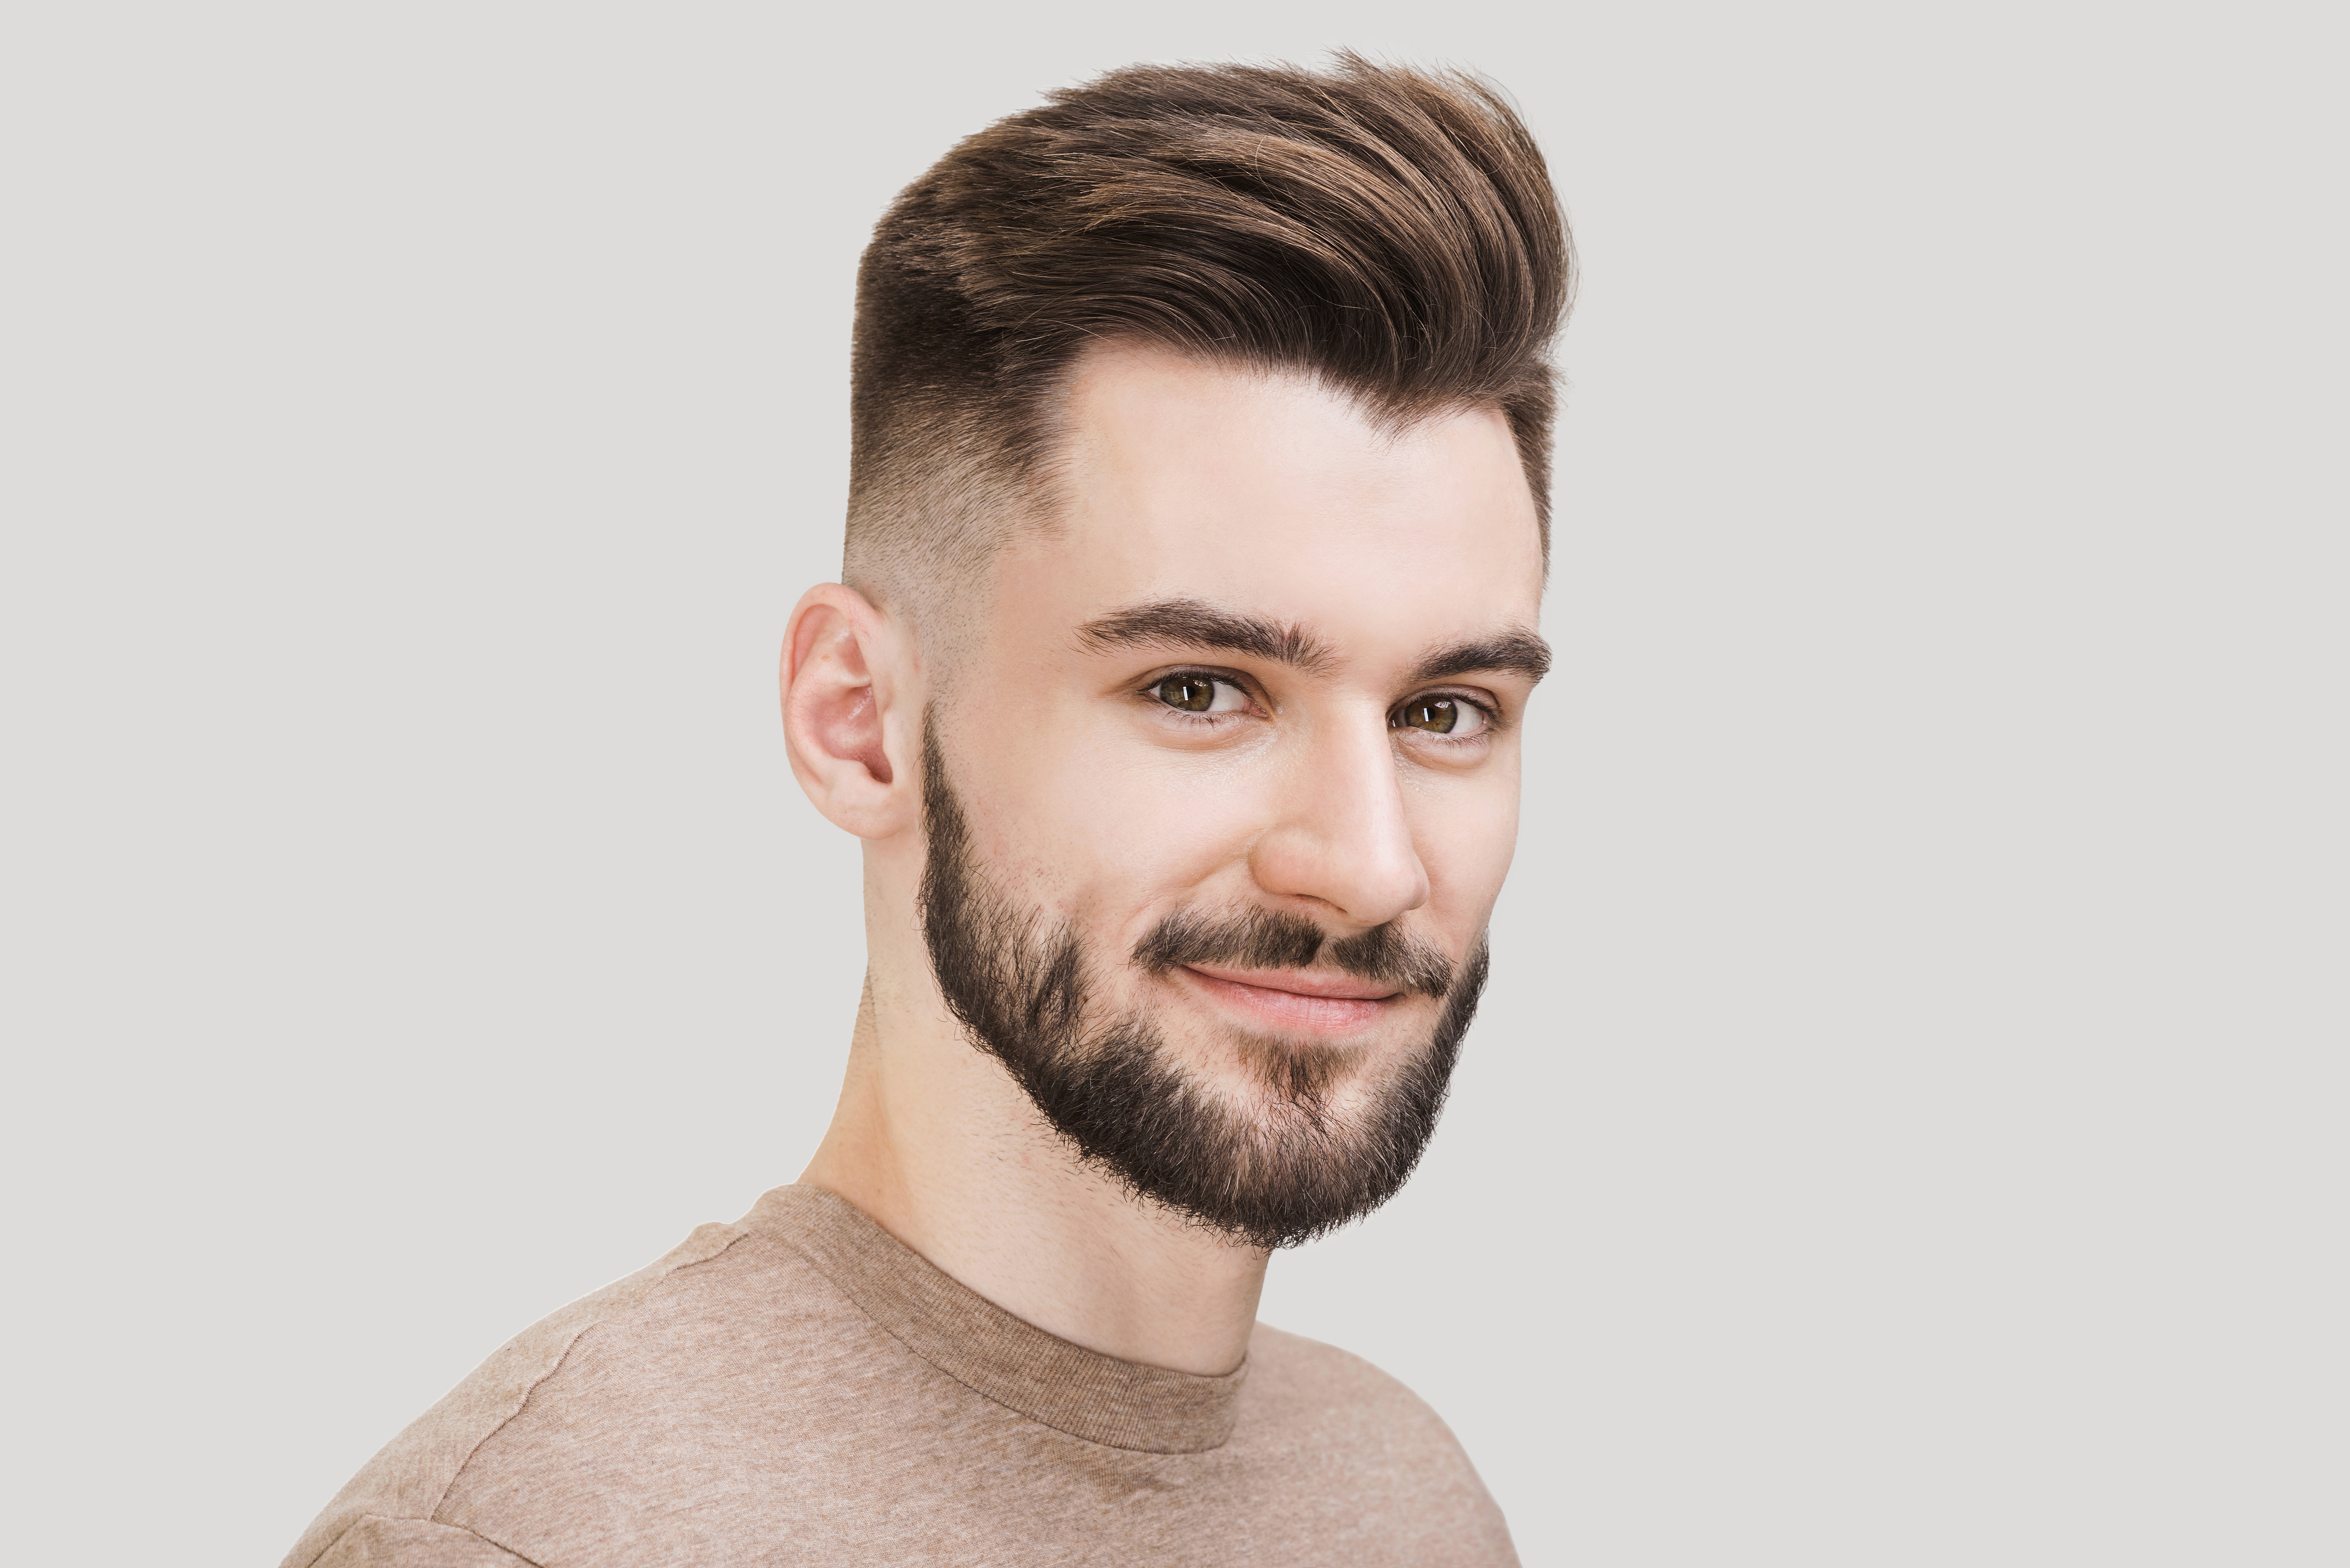 tieners Rommelig Minachting Healthy Hairdresser | Welk kapsel past het beste bij verschillende  gezichtsvormen van mannen?